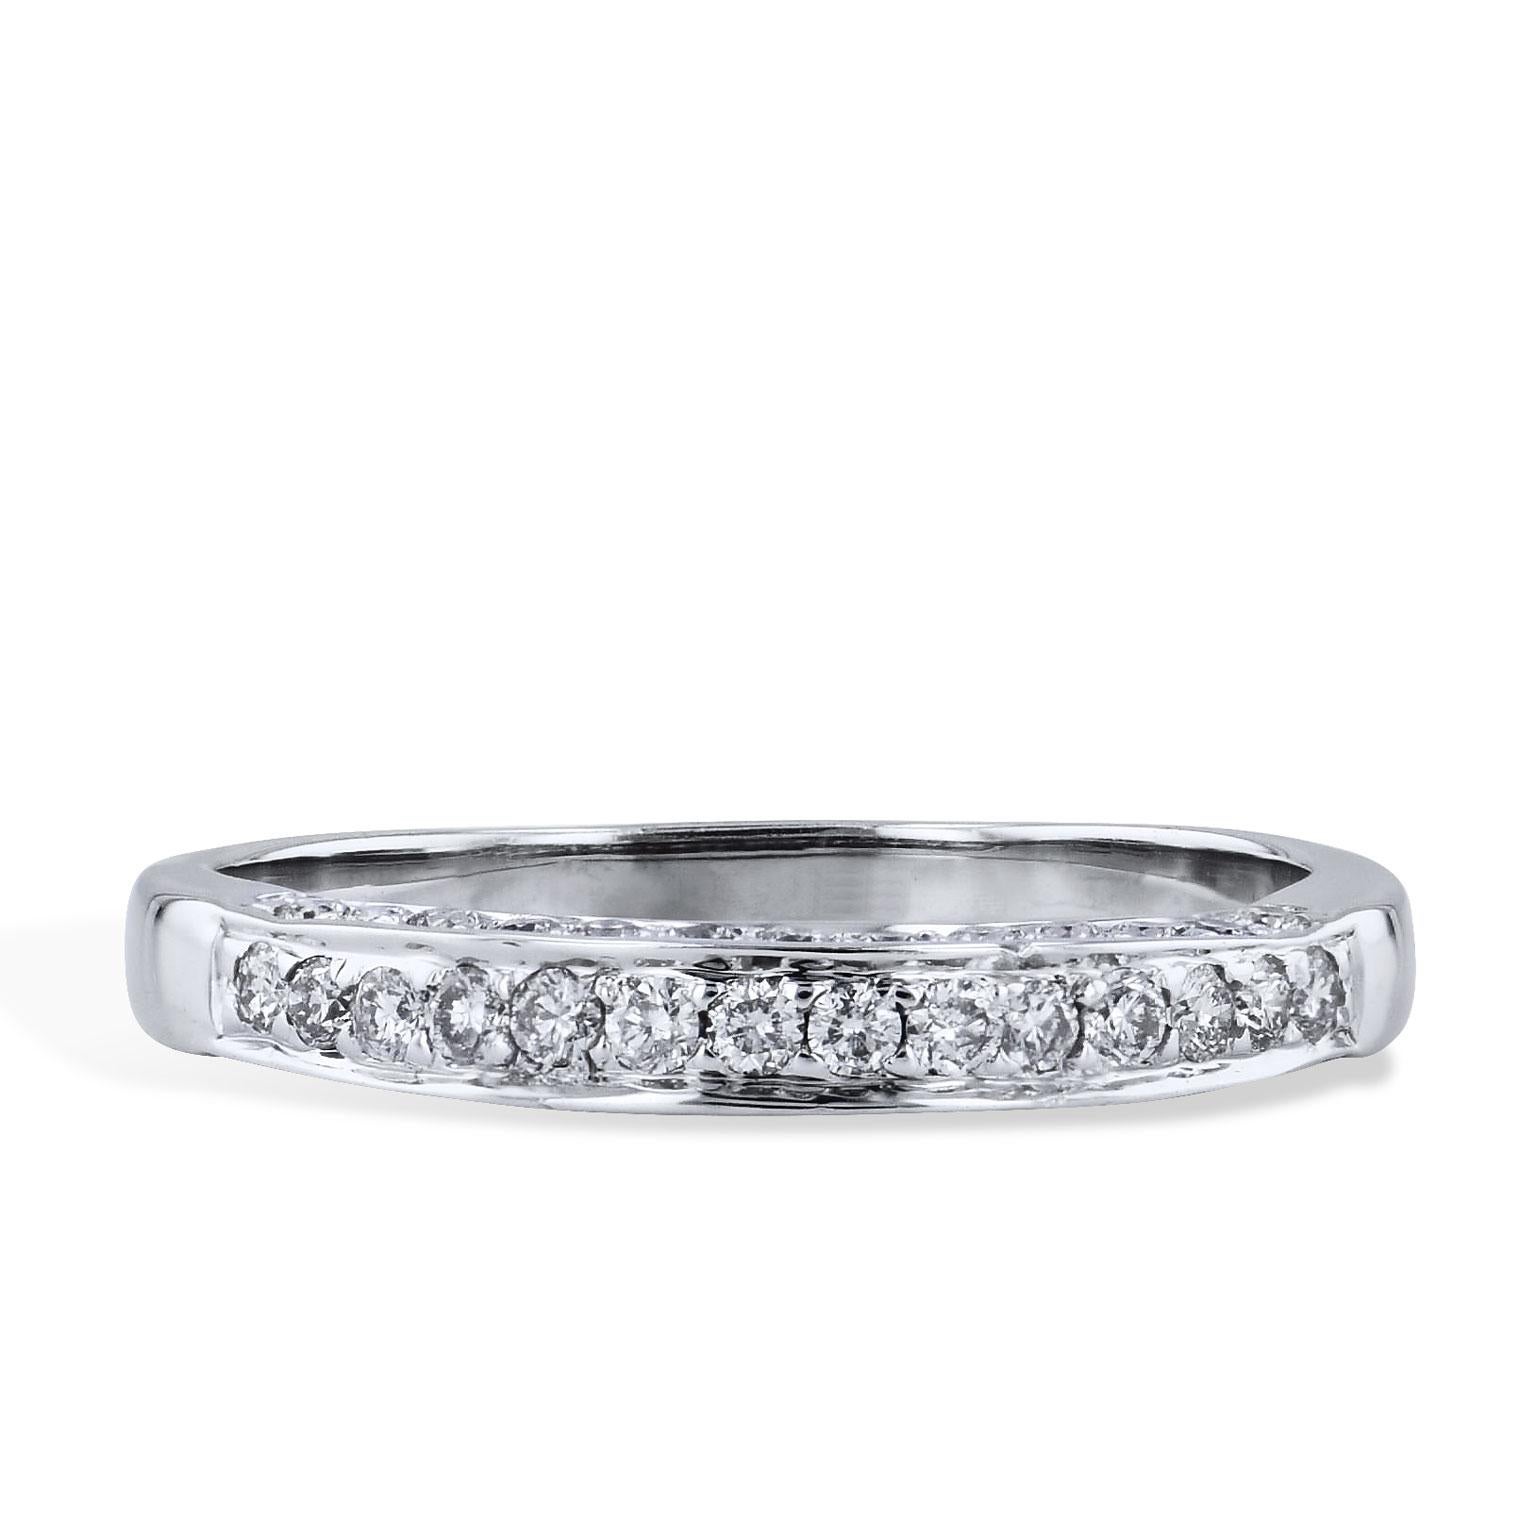 Women's Estate 0.40 Carat Diamond Band Ring in 18 Karat White Gold